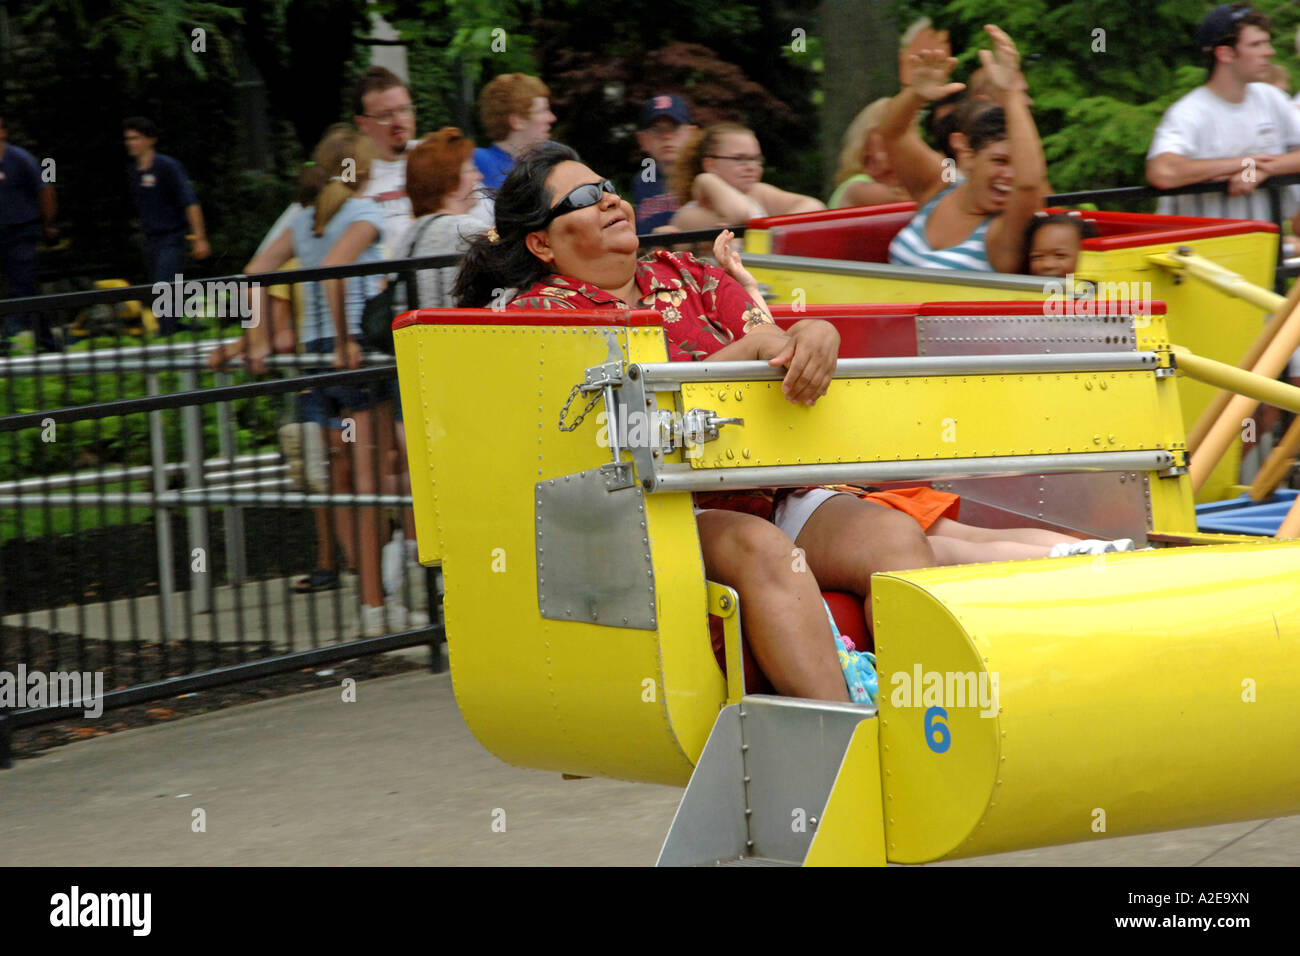 Les personnes bénéficiant d'une ride at Cedar Point Amusement Park Sandusky, OH Banque D'Images